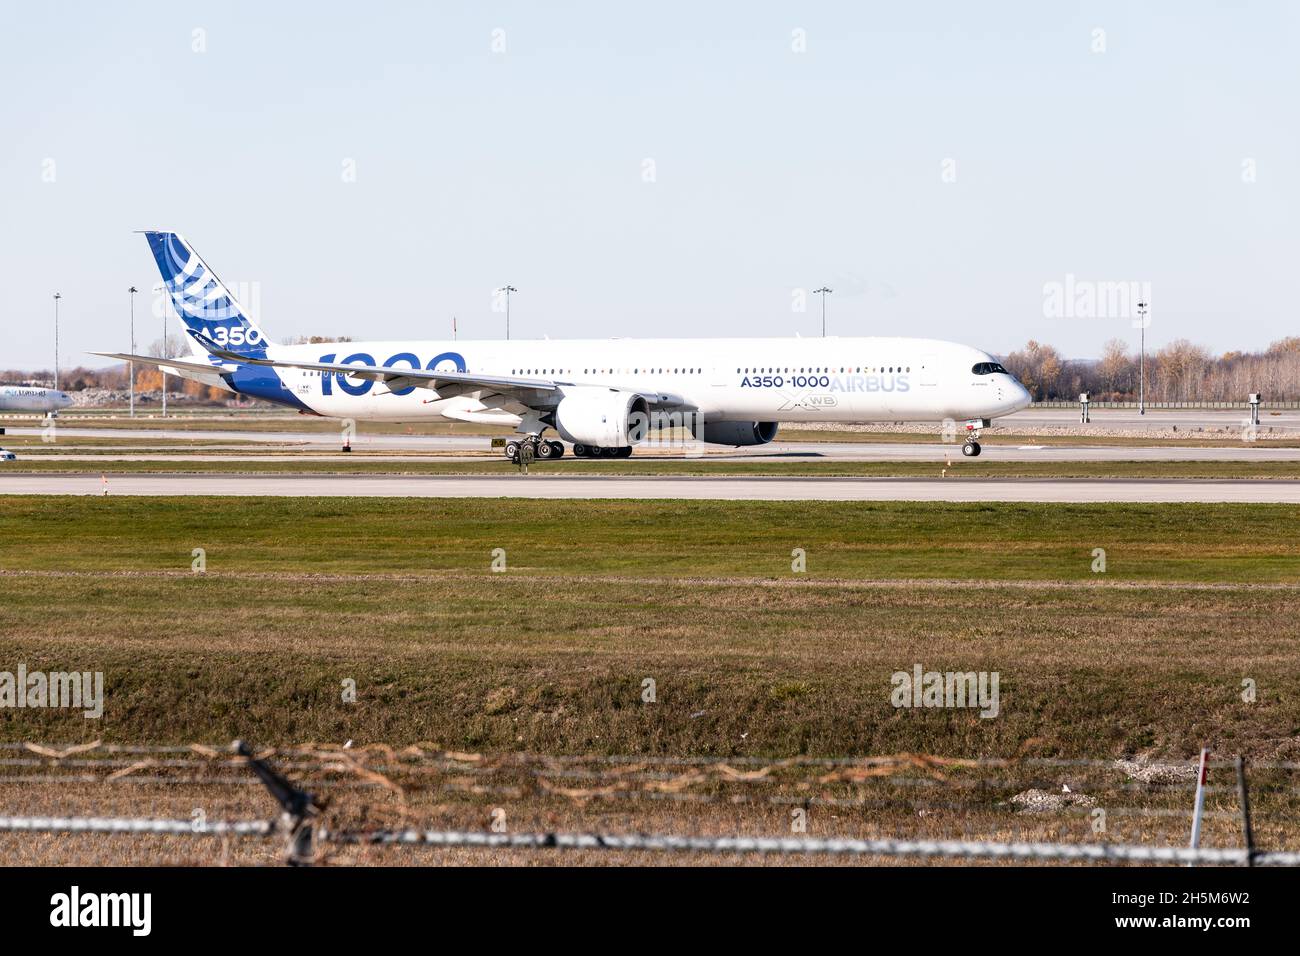 Airbus A350-1000 XWB in Montreal Airport, Pierre-Elliott Trudeau, Quebec, Canada Stock Photo